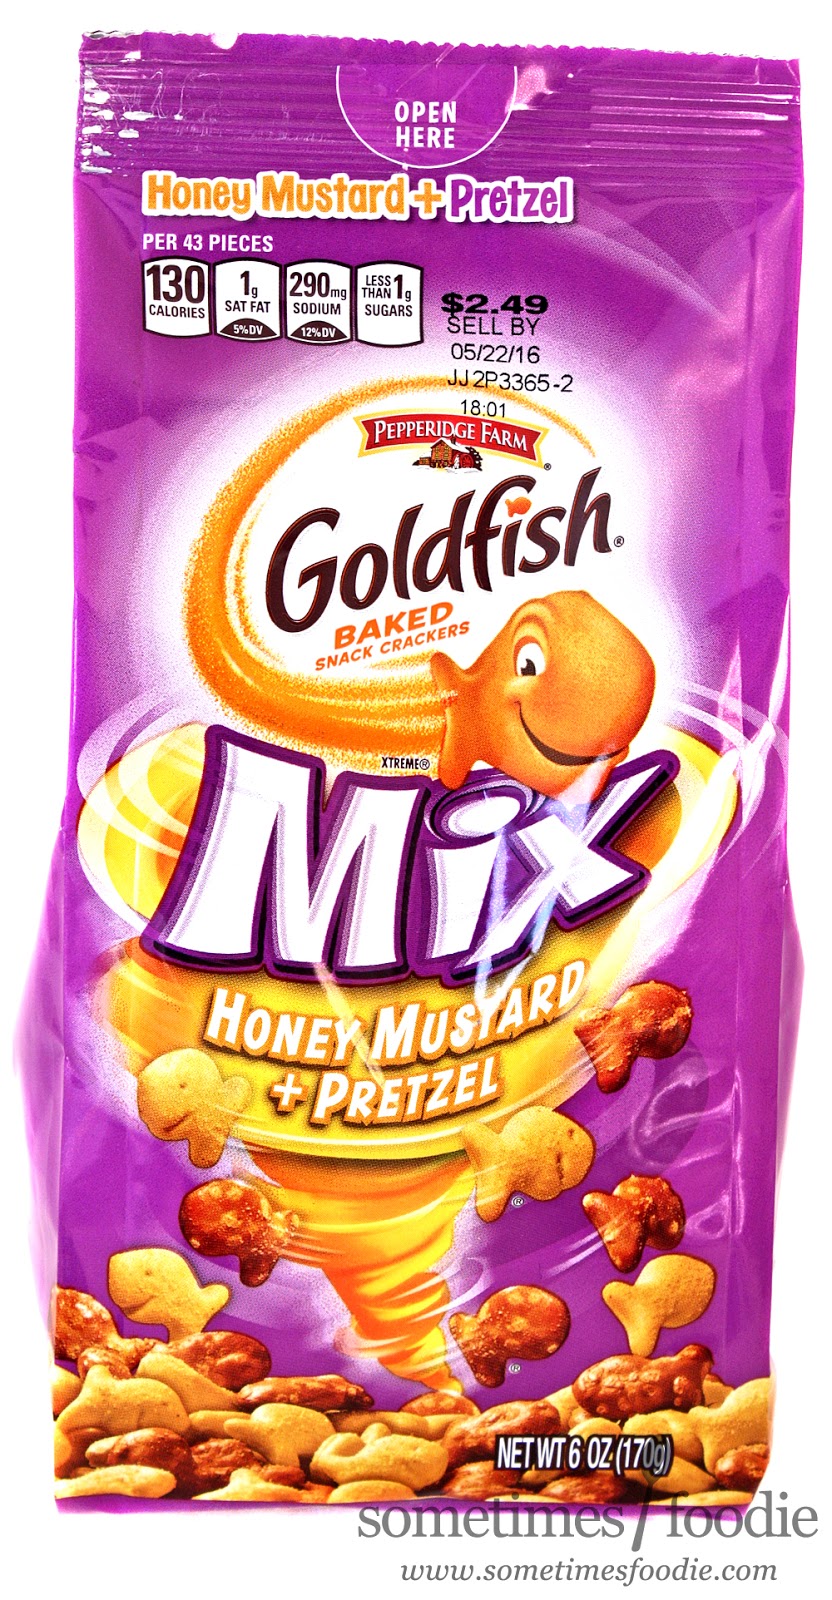 The m&m's pretzel packaging shows a nervous m&m who knows a